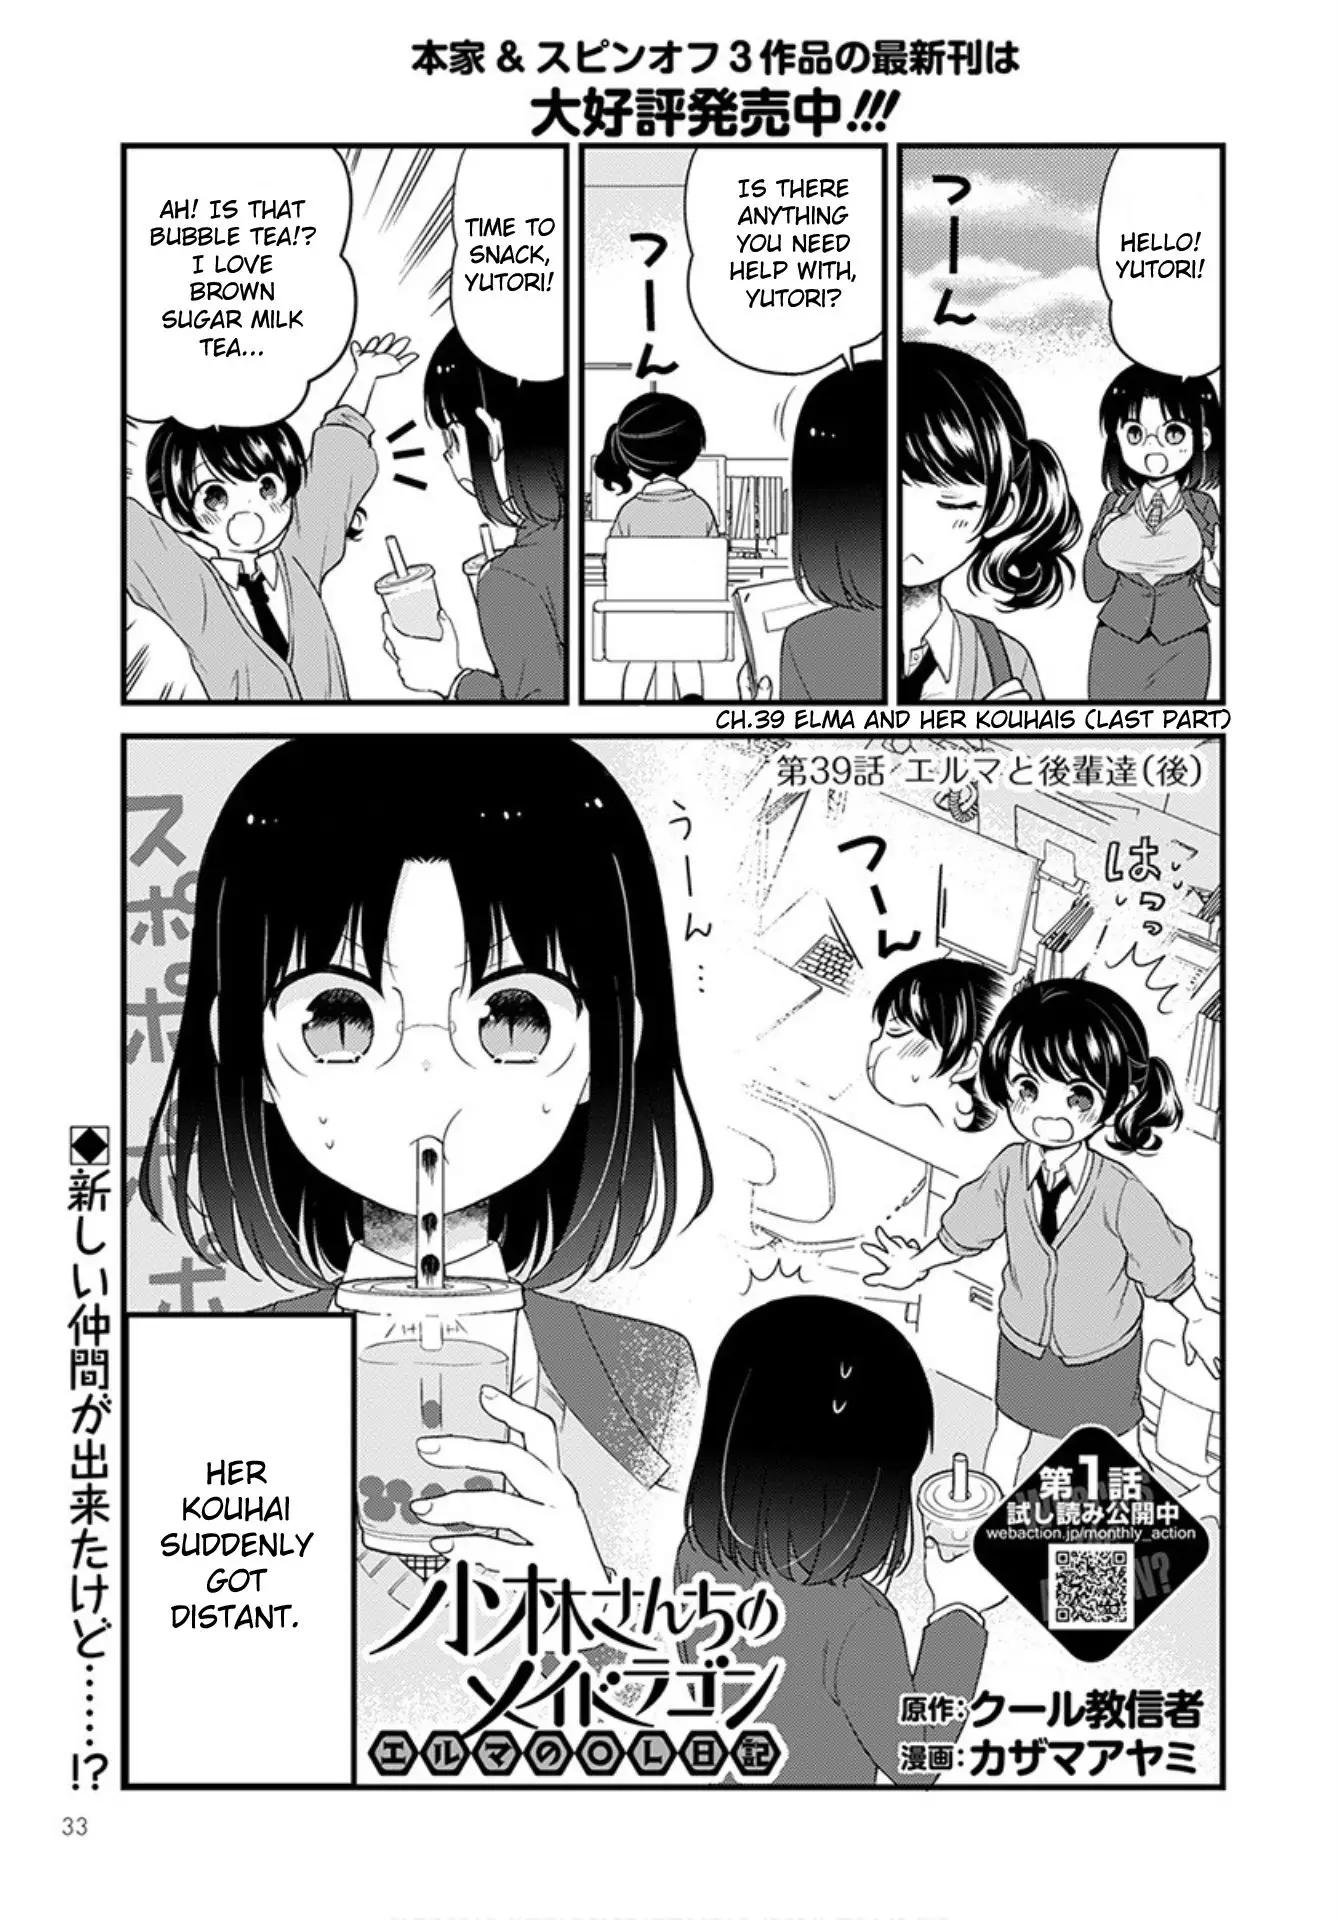 Kobayashi-San Chi No Maid Dragon: Elma Ol Nikki - 39 page 1